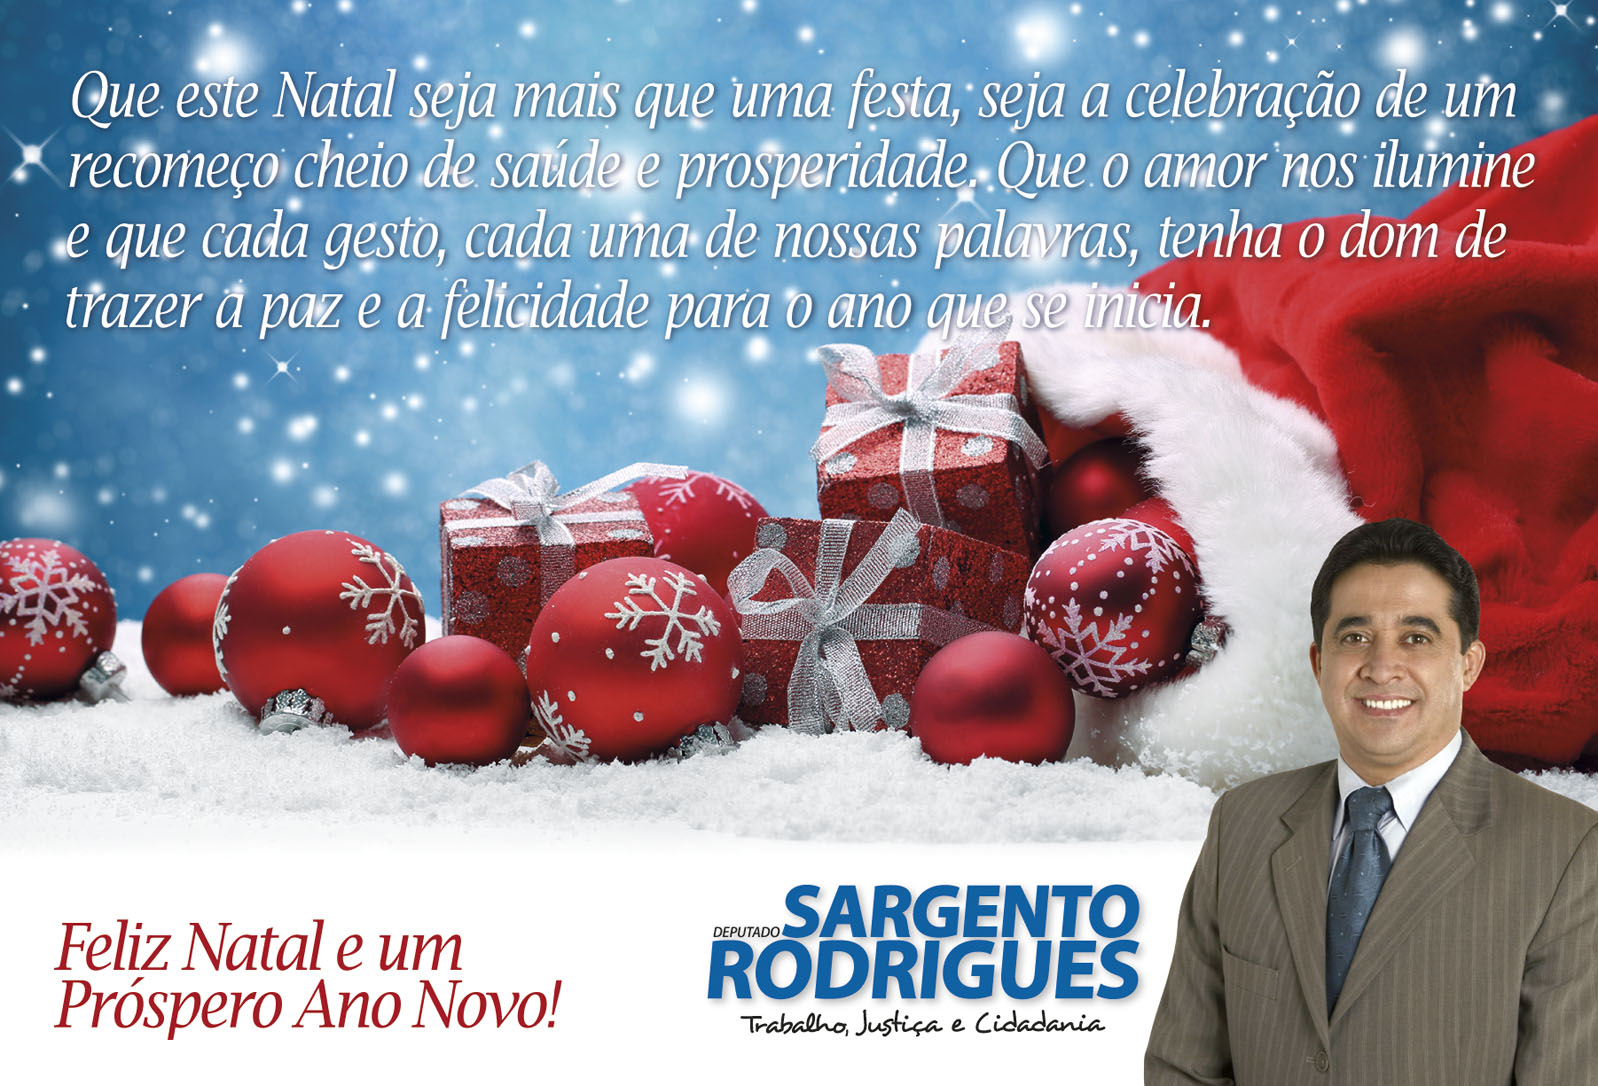 Deputado Sargento Rodrigues - FELIZ NATAL E PRÓSPERO ANO NOVO!